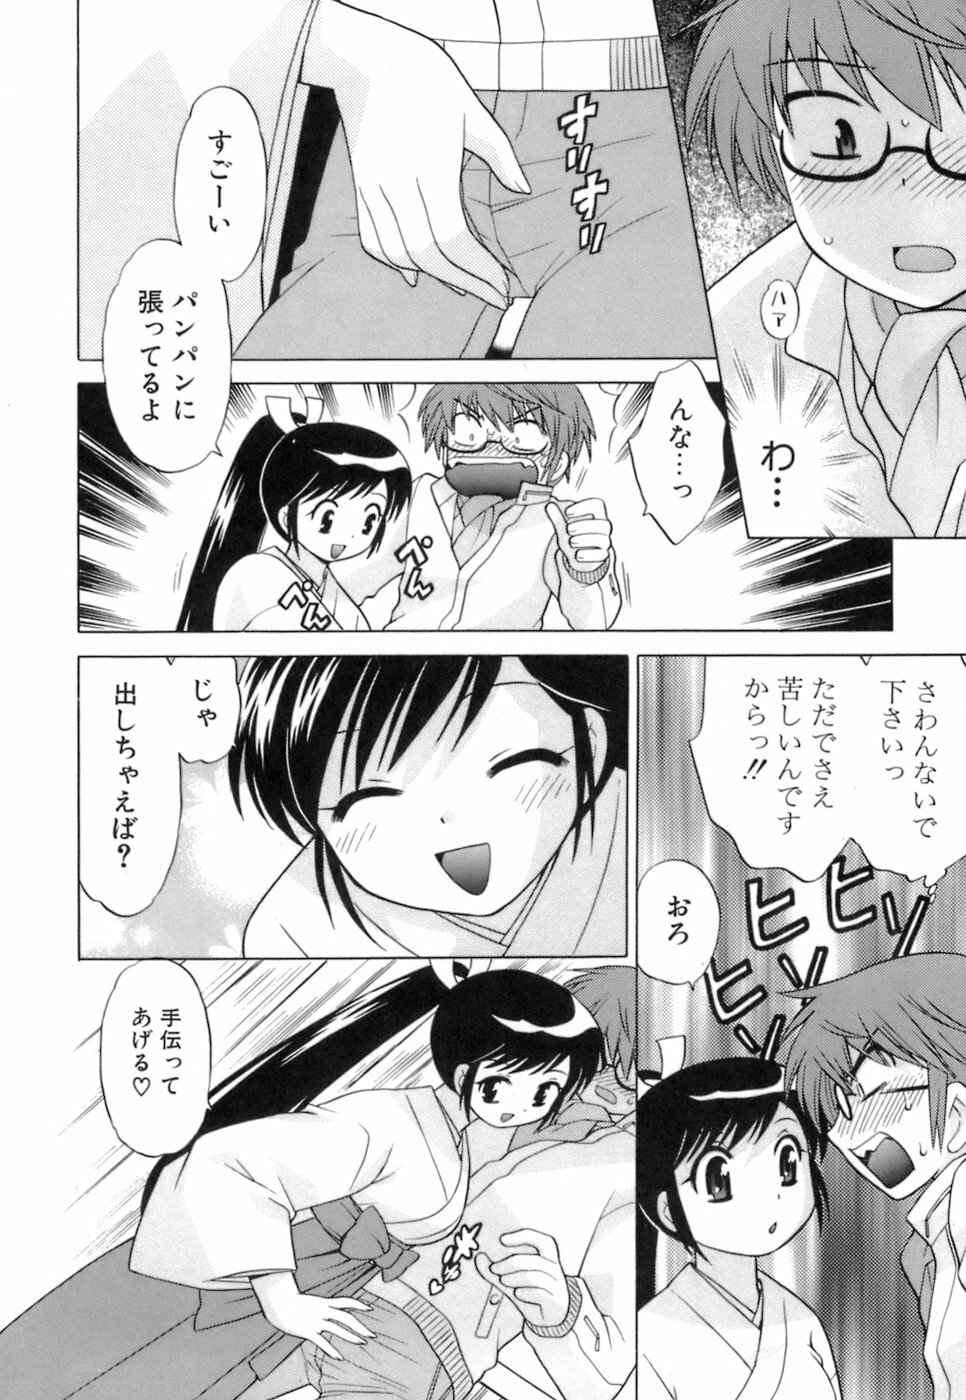 [Kotono Wakako] Miko Moe 1 page 24 full